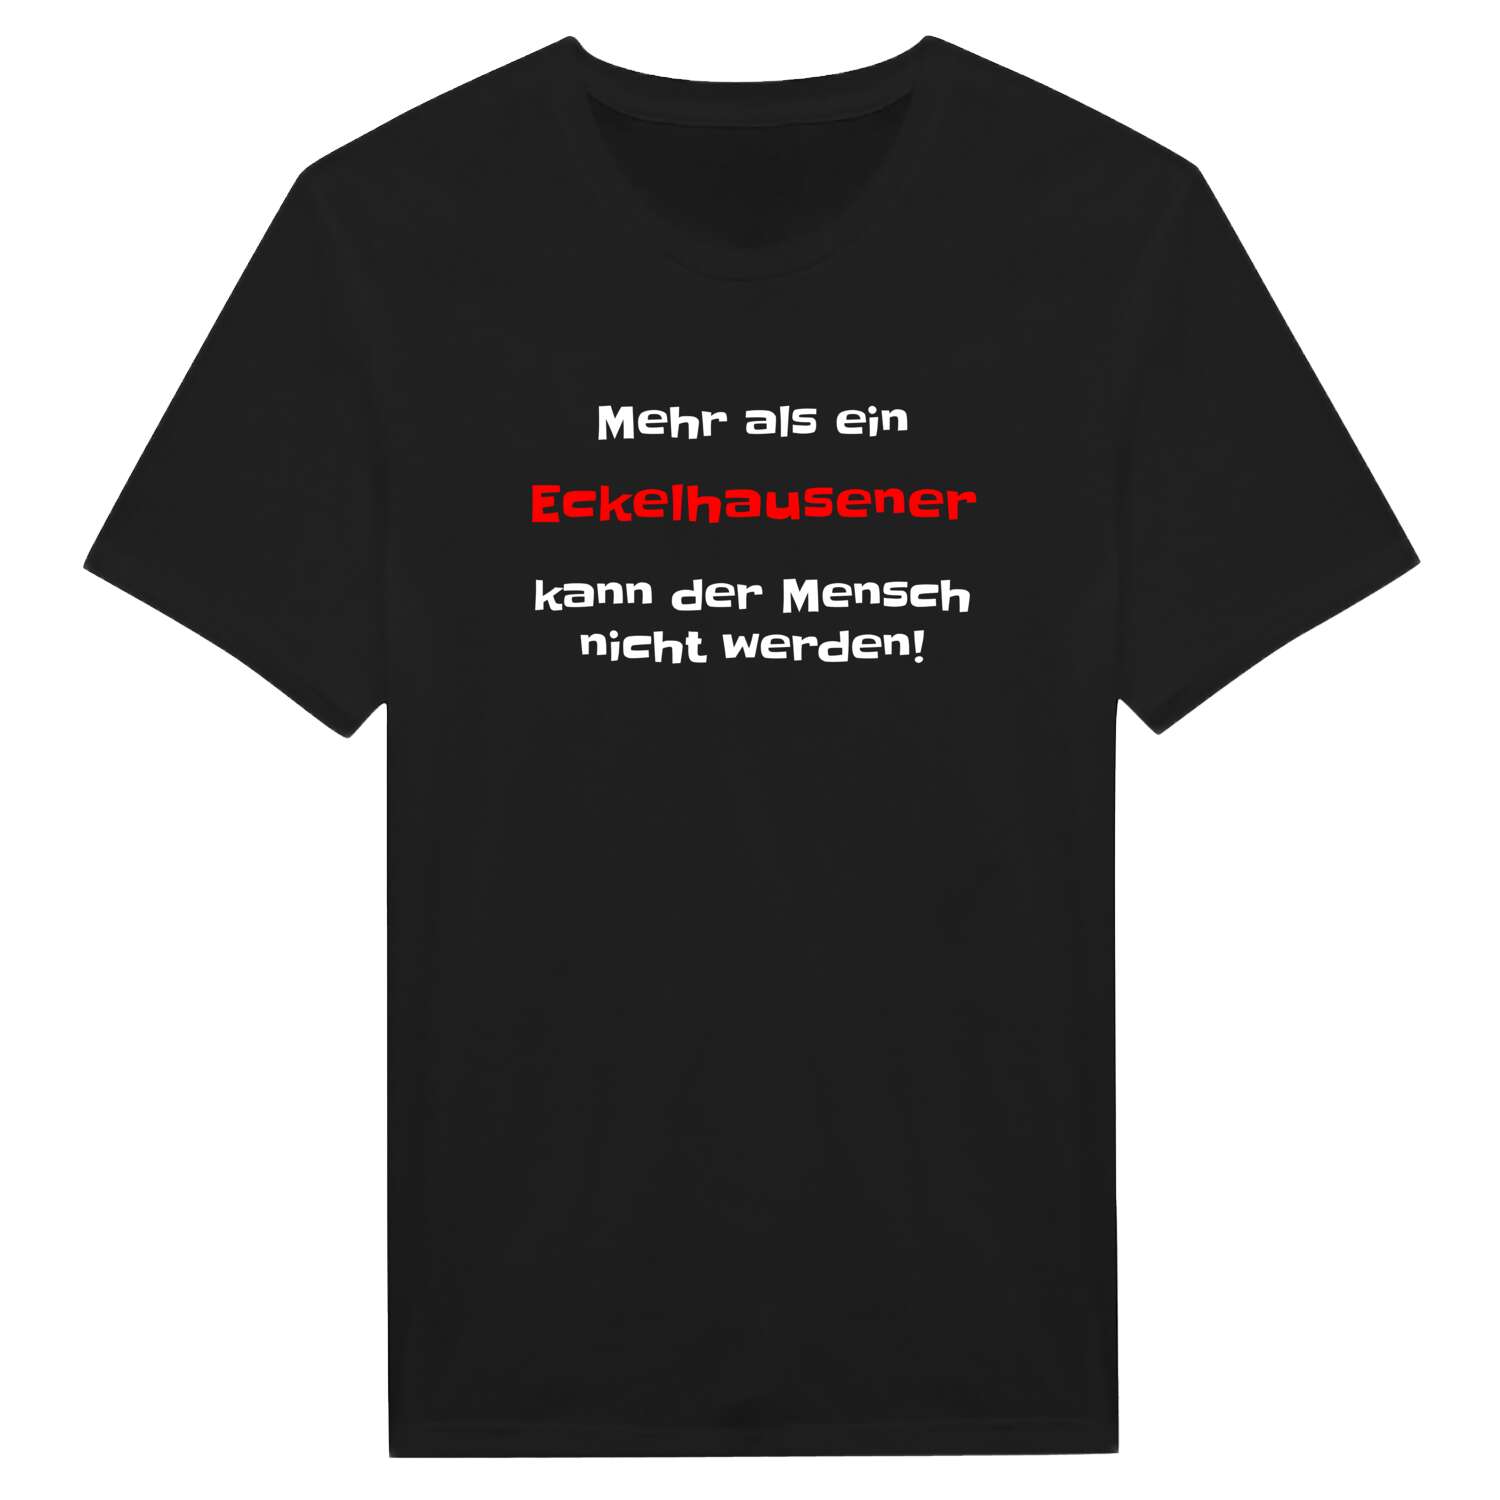 Eckelhausen T-Shirt »Mehr als ein«